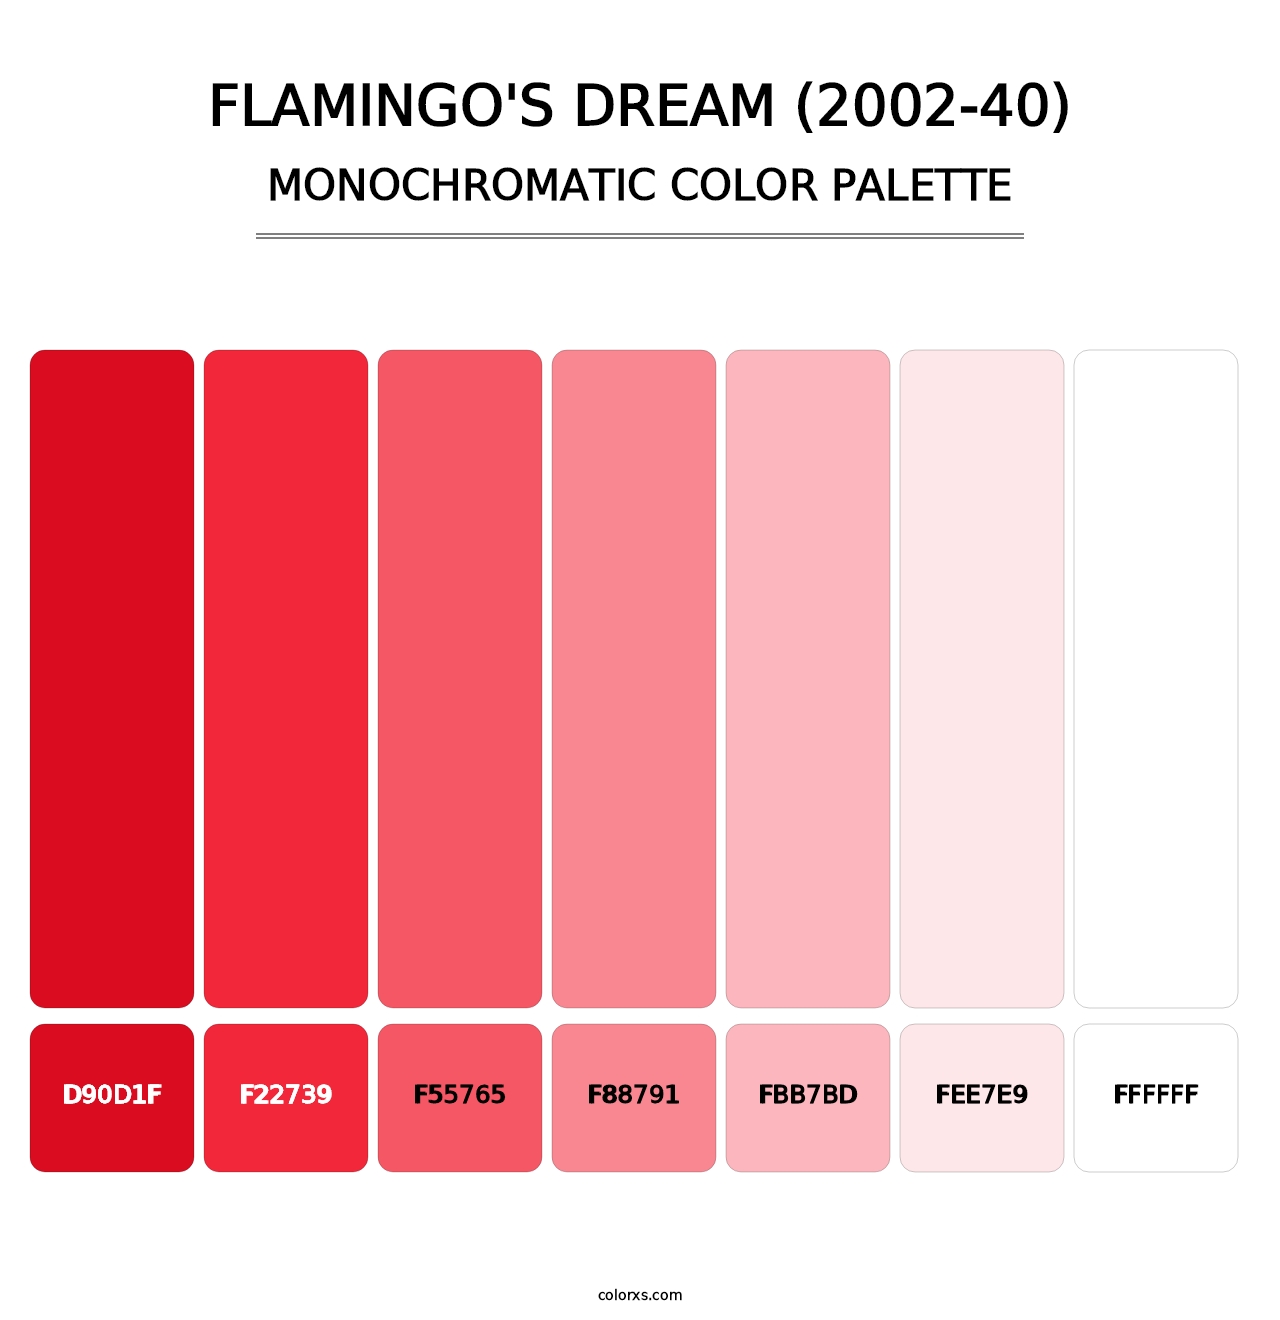 Flamingo's Dream (2002-40) - Monochromatic Color Palette